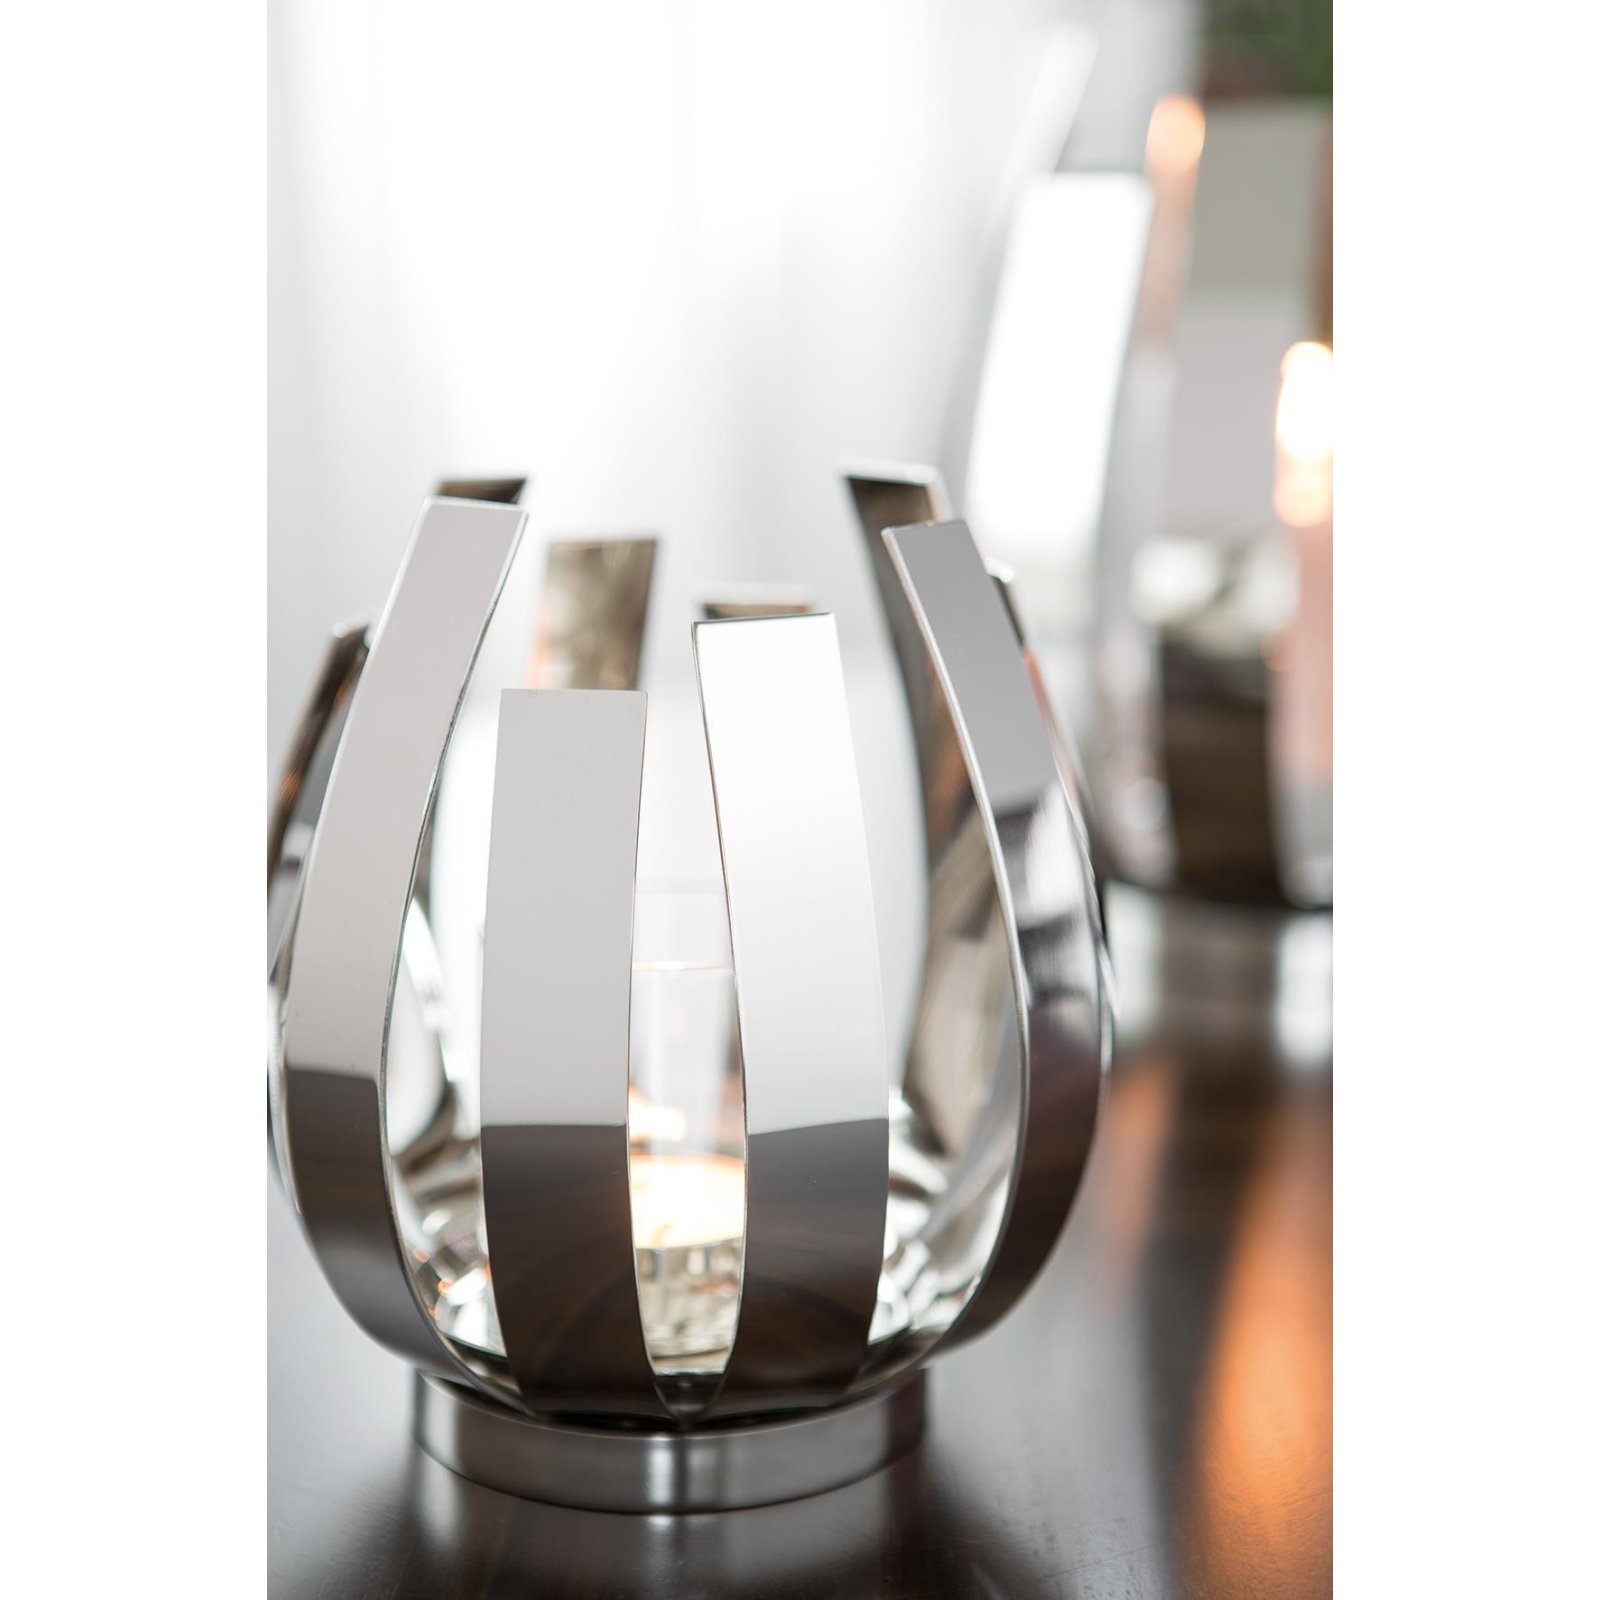 Fink ORFEA Windlicht mit Glas vernickelt, 99,95 €